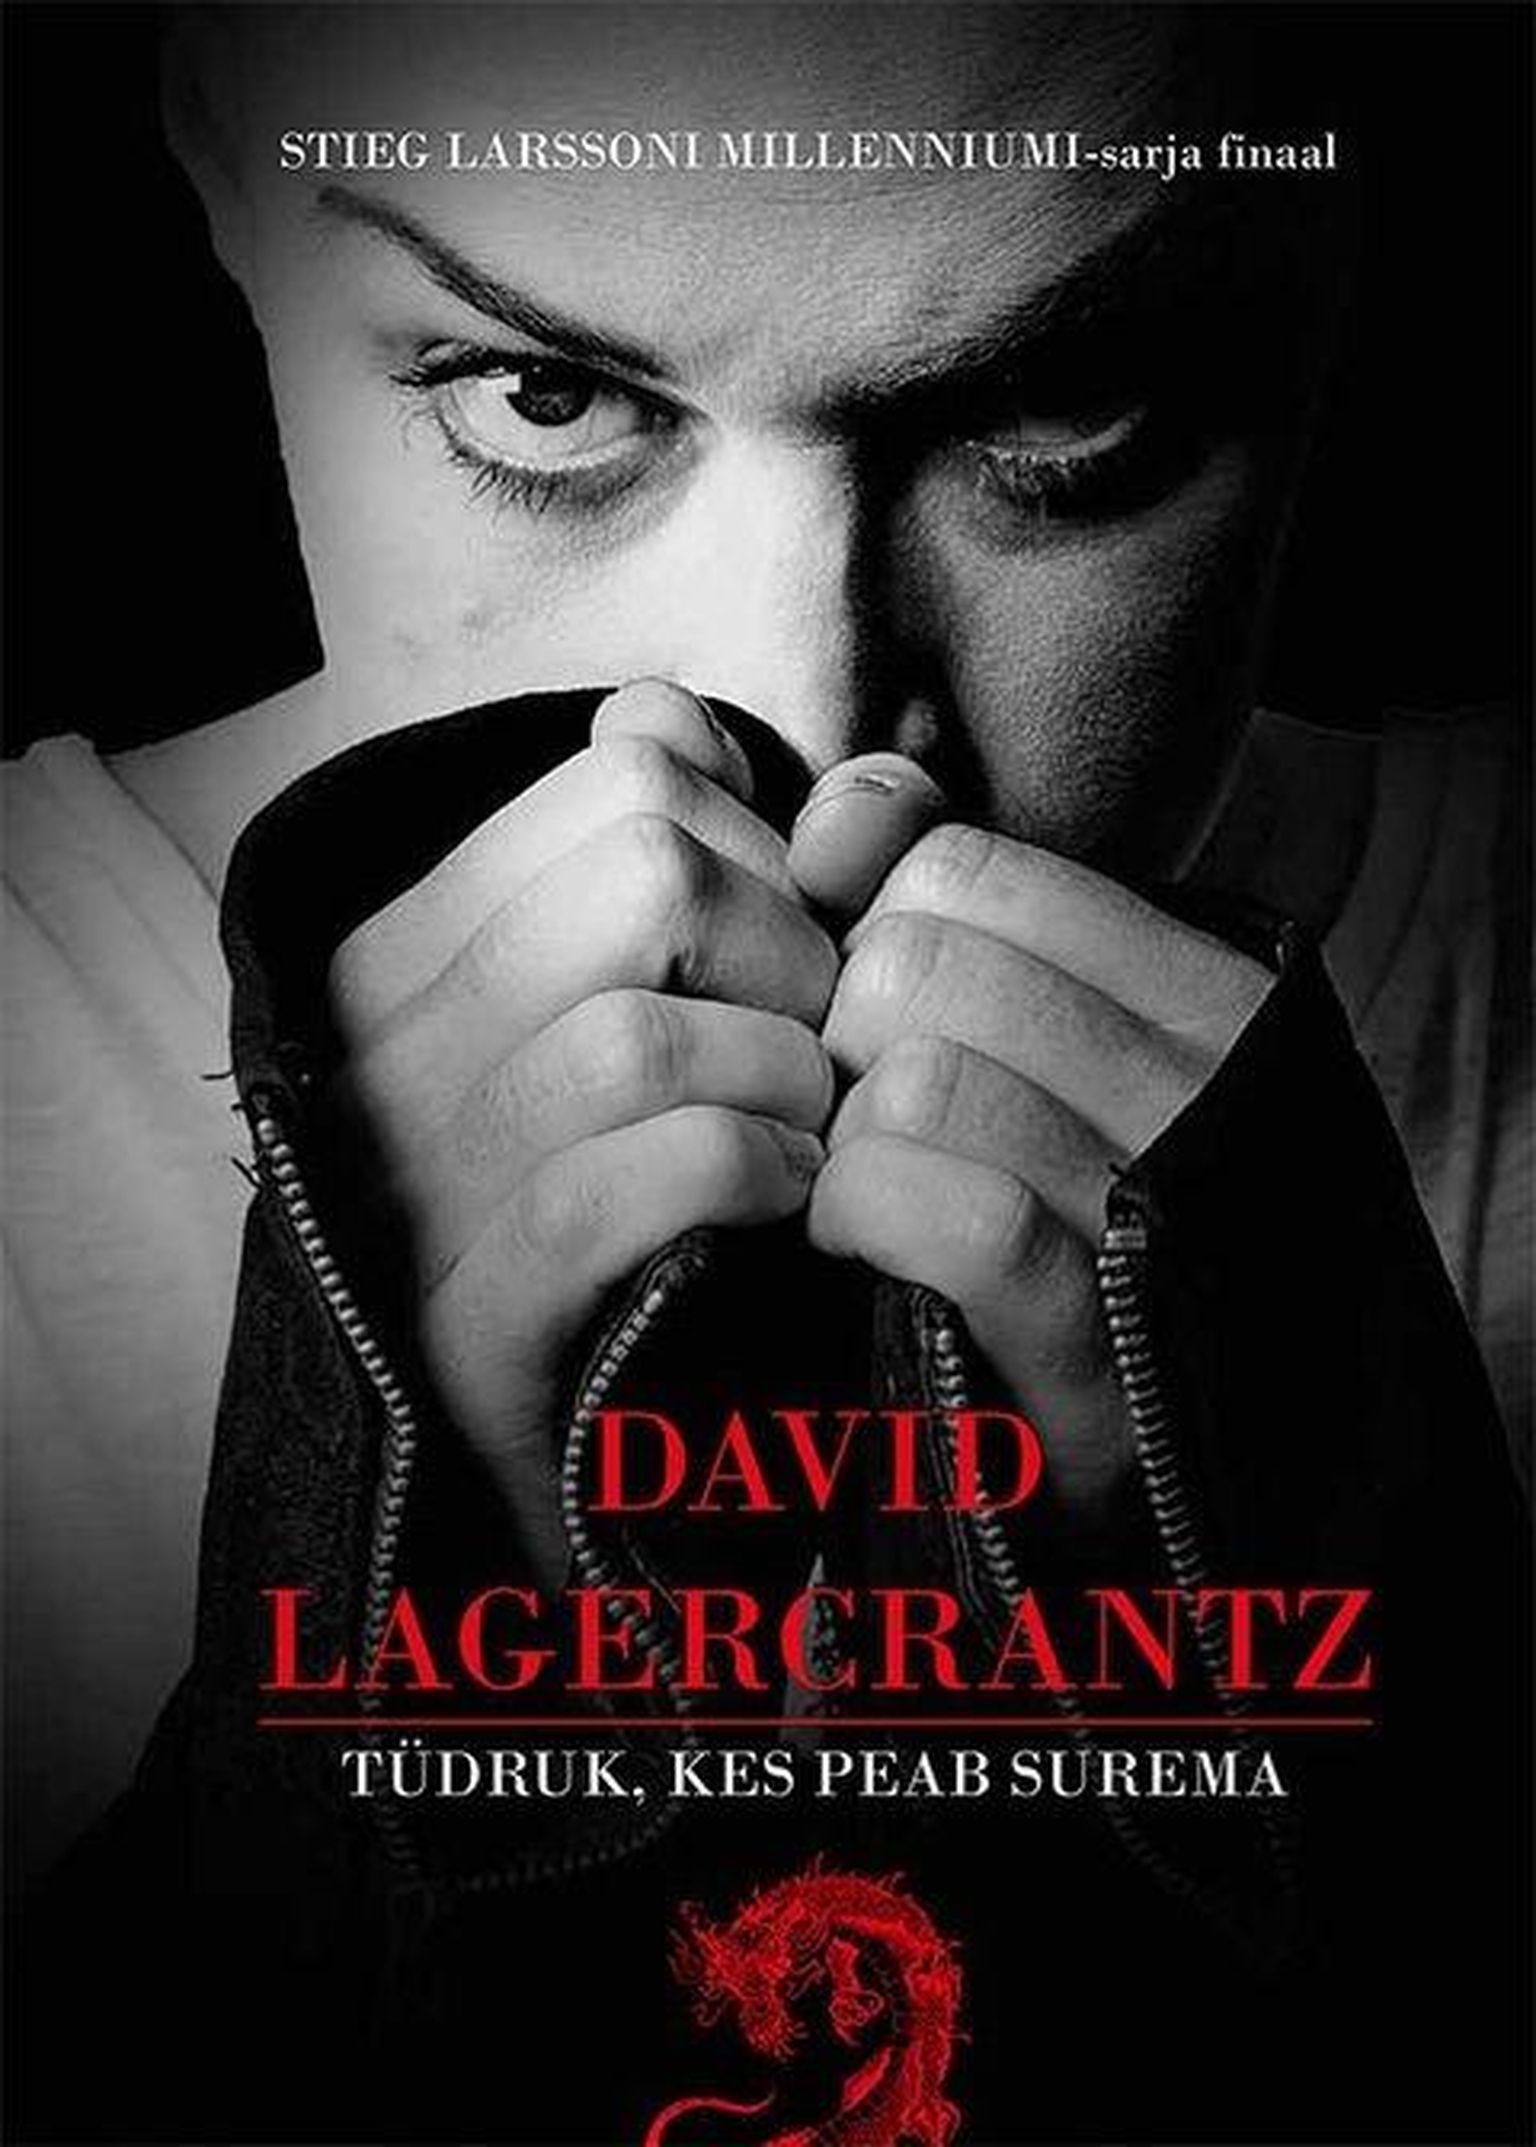 David Lagercrantzi "Tüdruk, kes peab surema", Stieg Larssoni "Millenniumi"-sarja finaal, on Lääne-Viru keskraamatukogu detsembrikuu laenutuste esikümnes kaheksandal kohal.